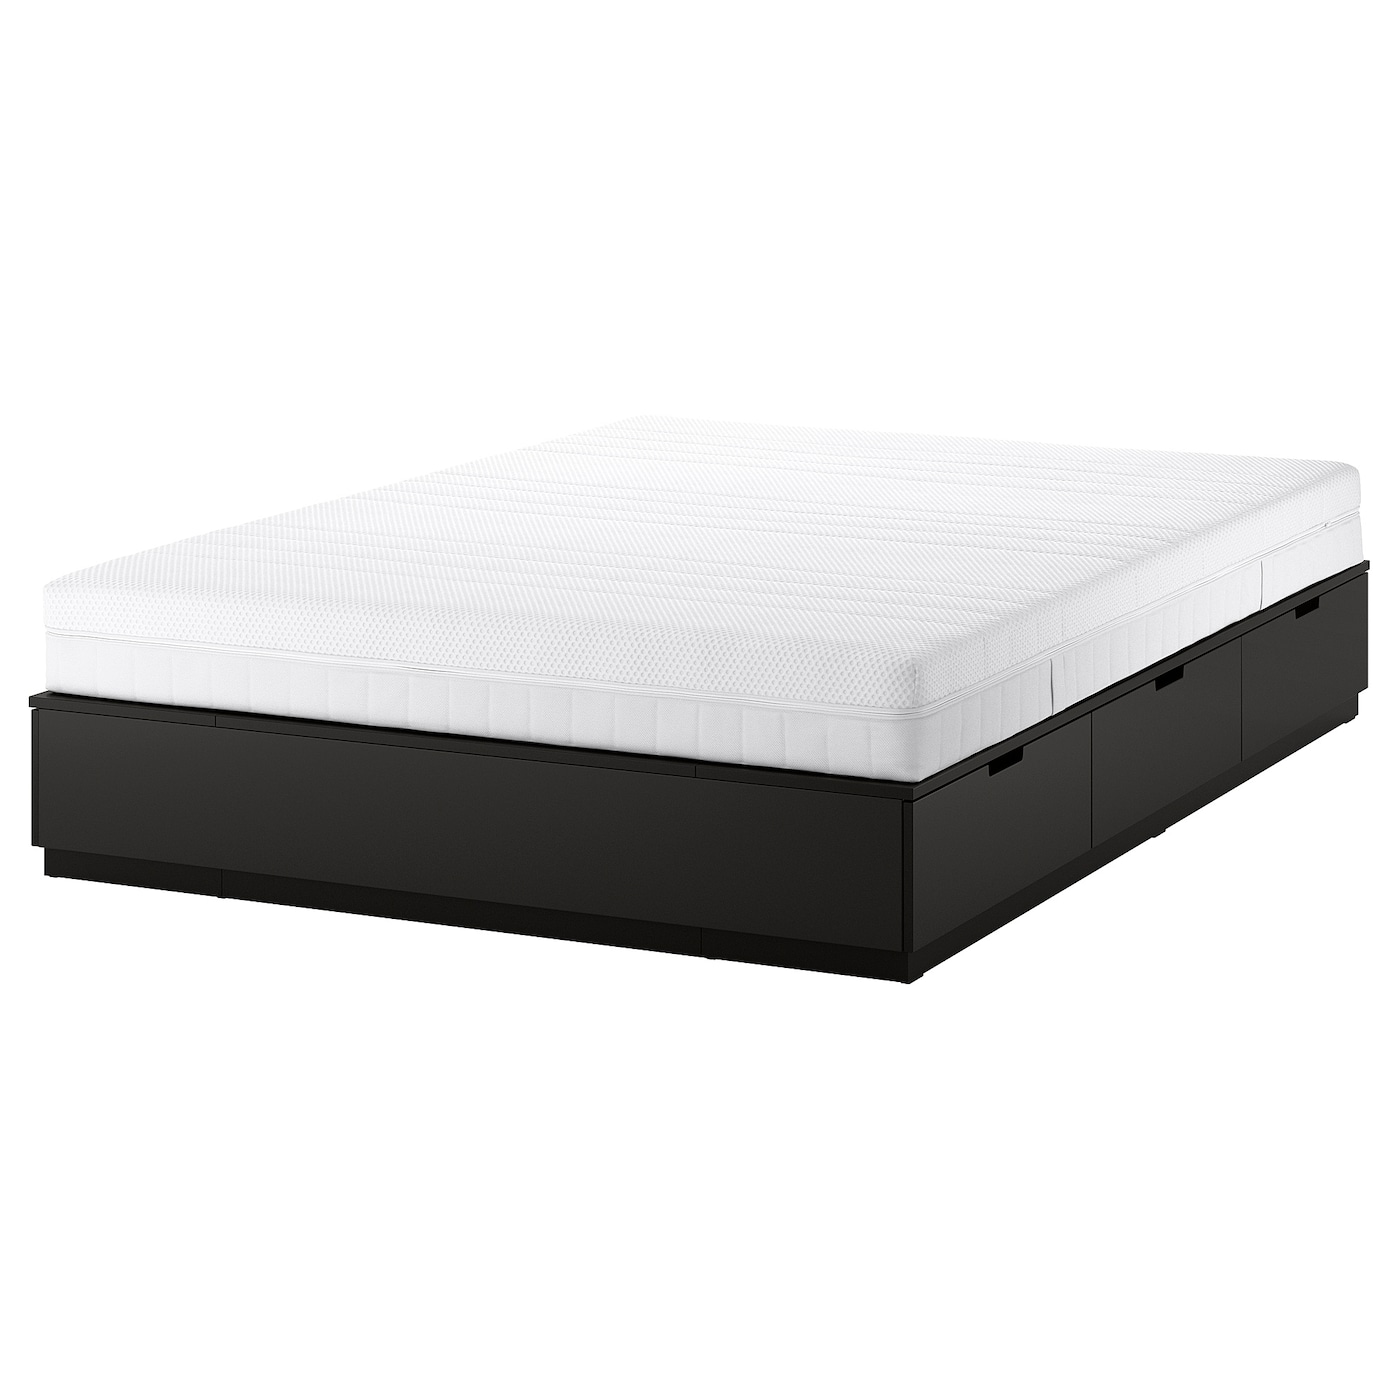 Каркас кровати с ящиком для хранения и матрасом - IKEA NORDLI, 200х160 см, матрас жесткий, черный, НОРДЛИ ИКЕА